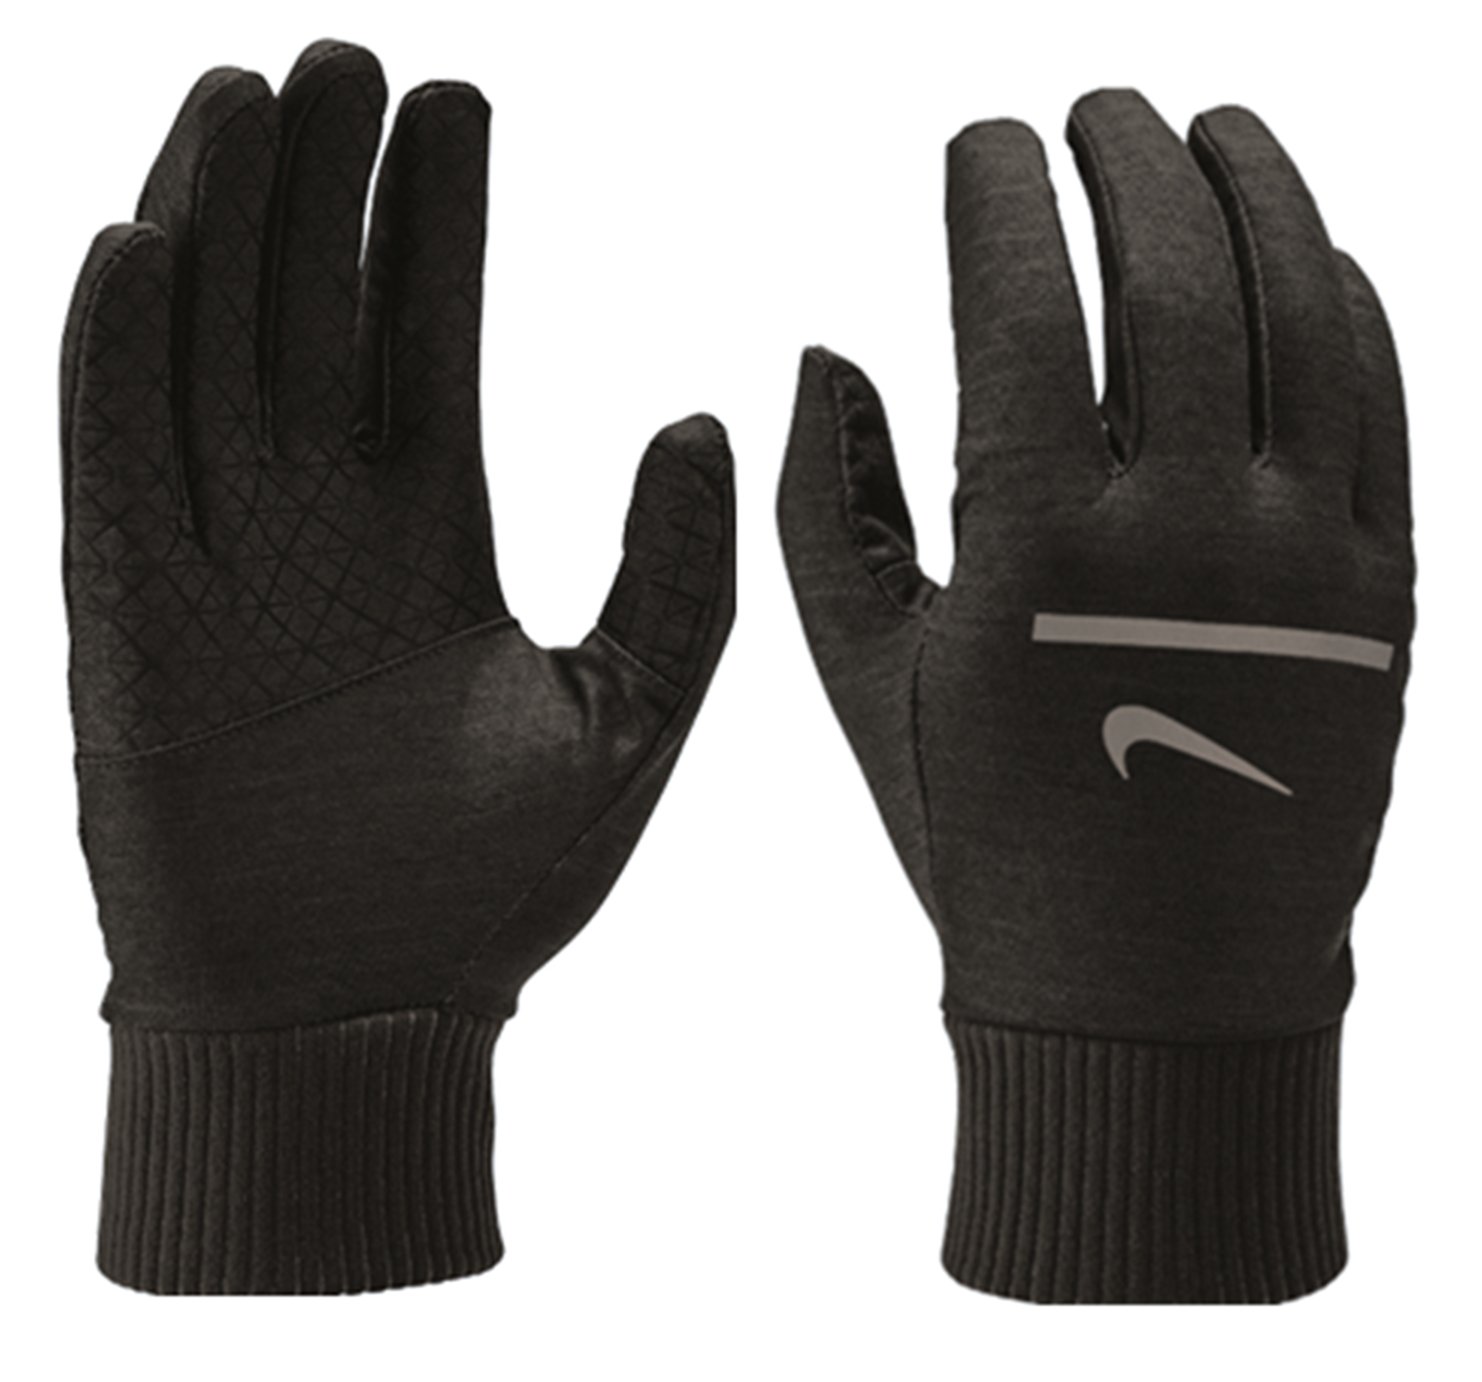 Nike Men's Sphere Running Gloves - Medium